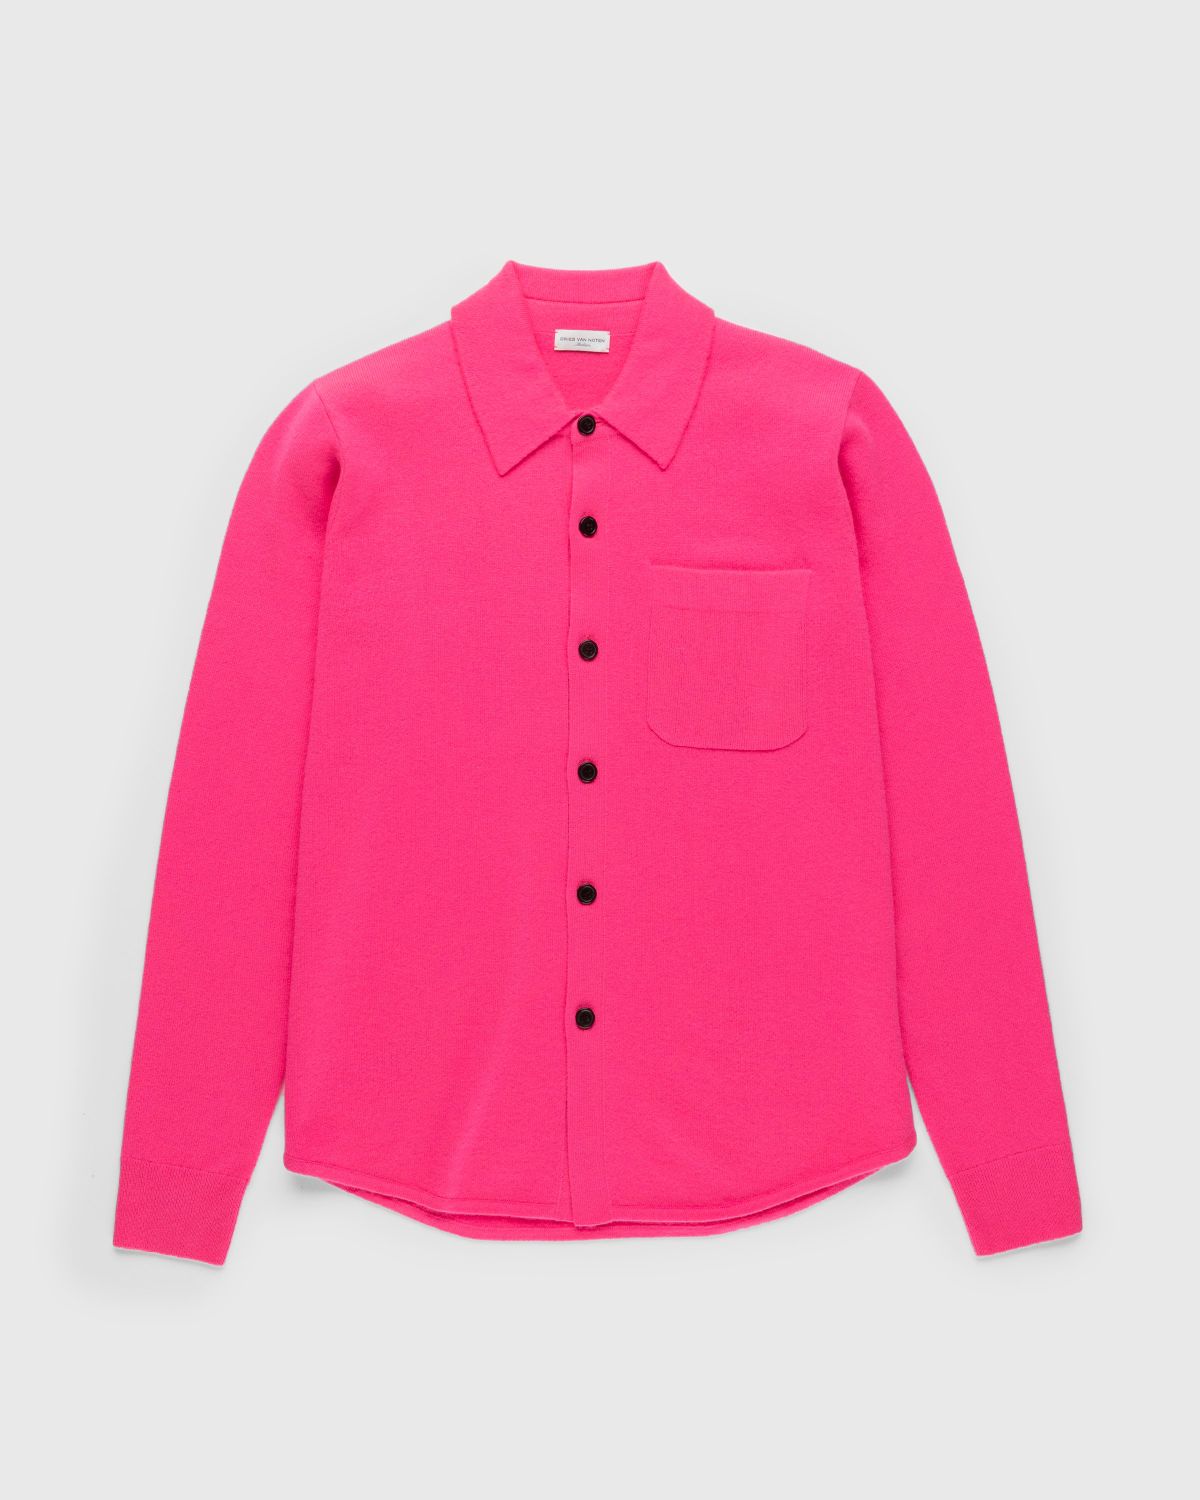 Dries van Noten – Never Cardigan - Knitwear - Pink - Image 1